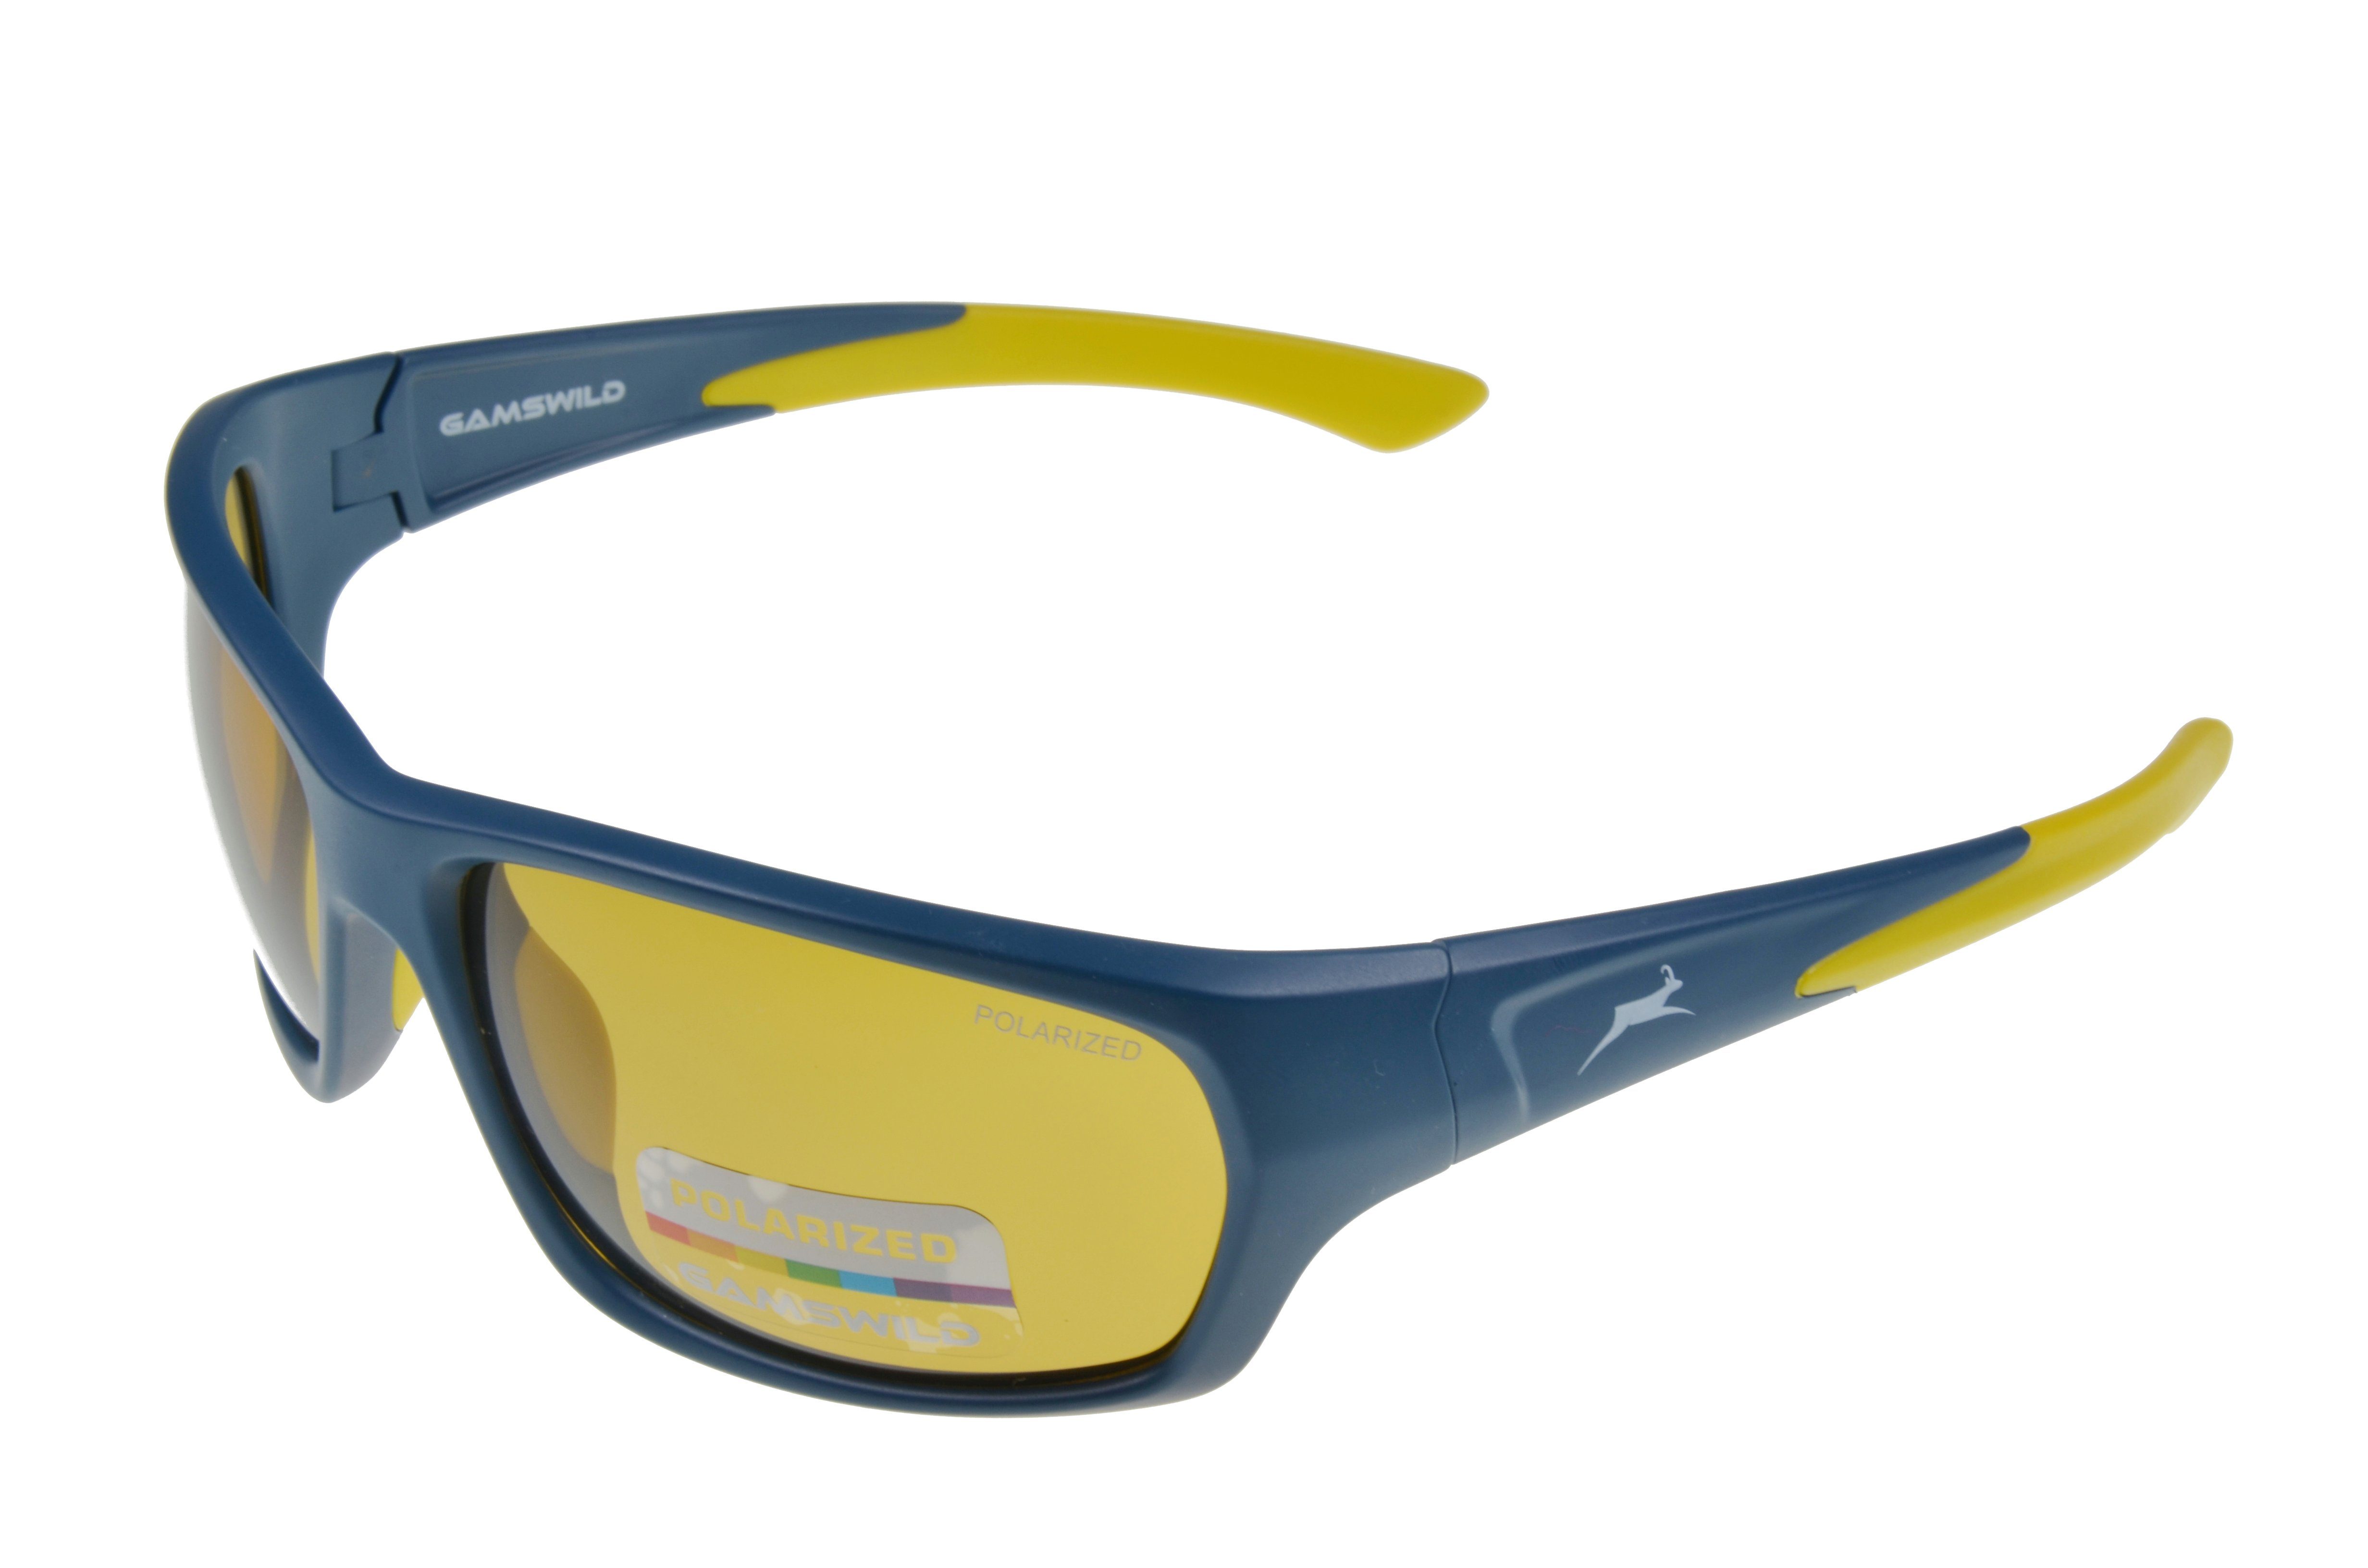 Gamswild Sportbrille WS4632 Sonnenbrille Skibrille Fahrradbrille Damen Herren Unisex TR90, polarisiert, beere-pink, schwarz-grün, amber, blau-grau blau_amber